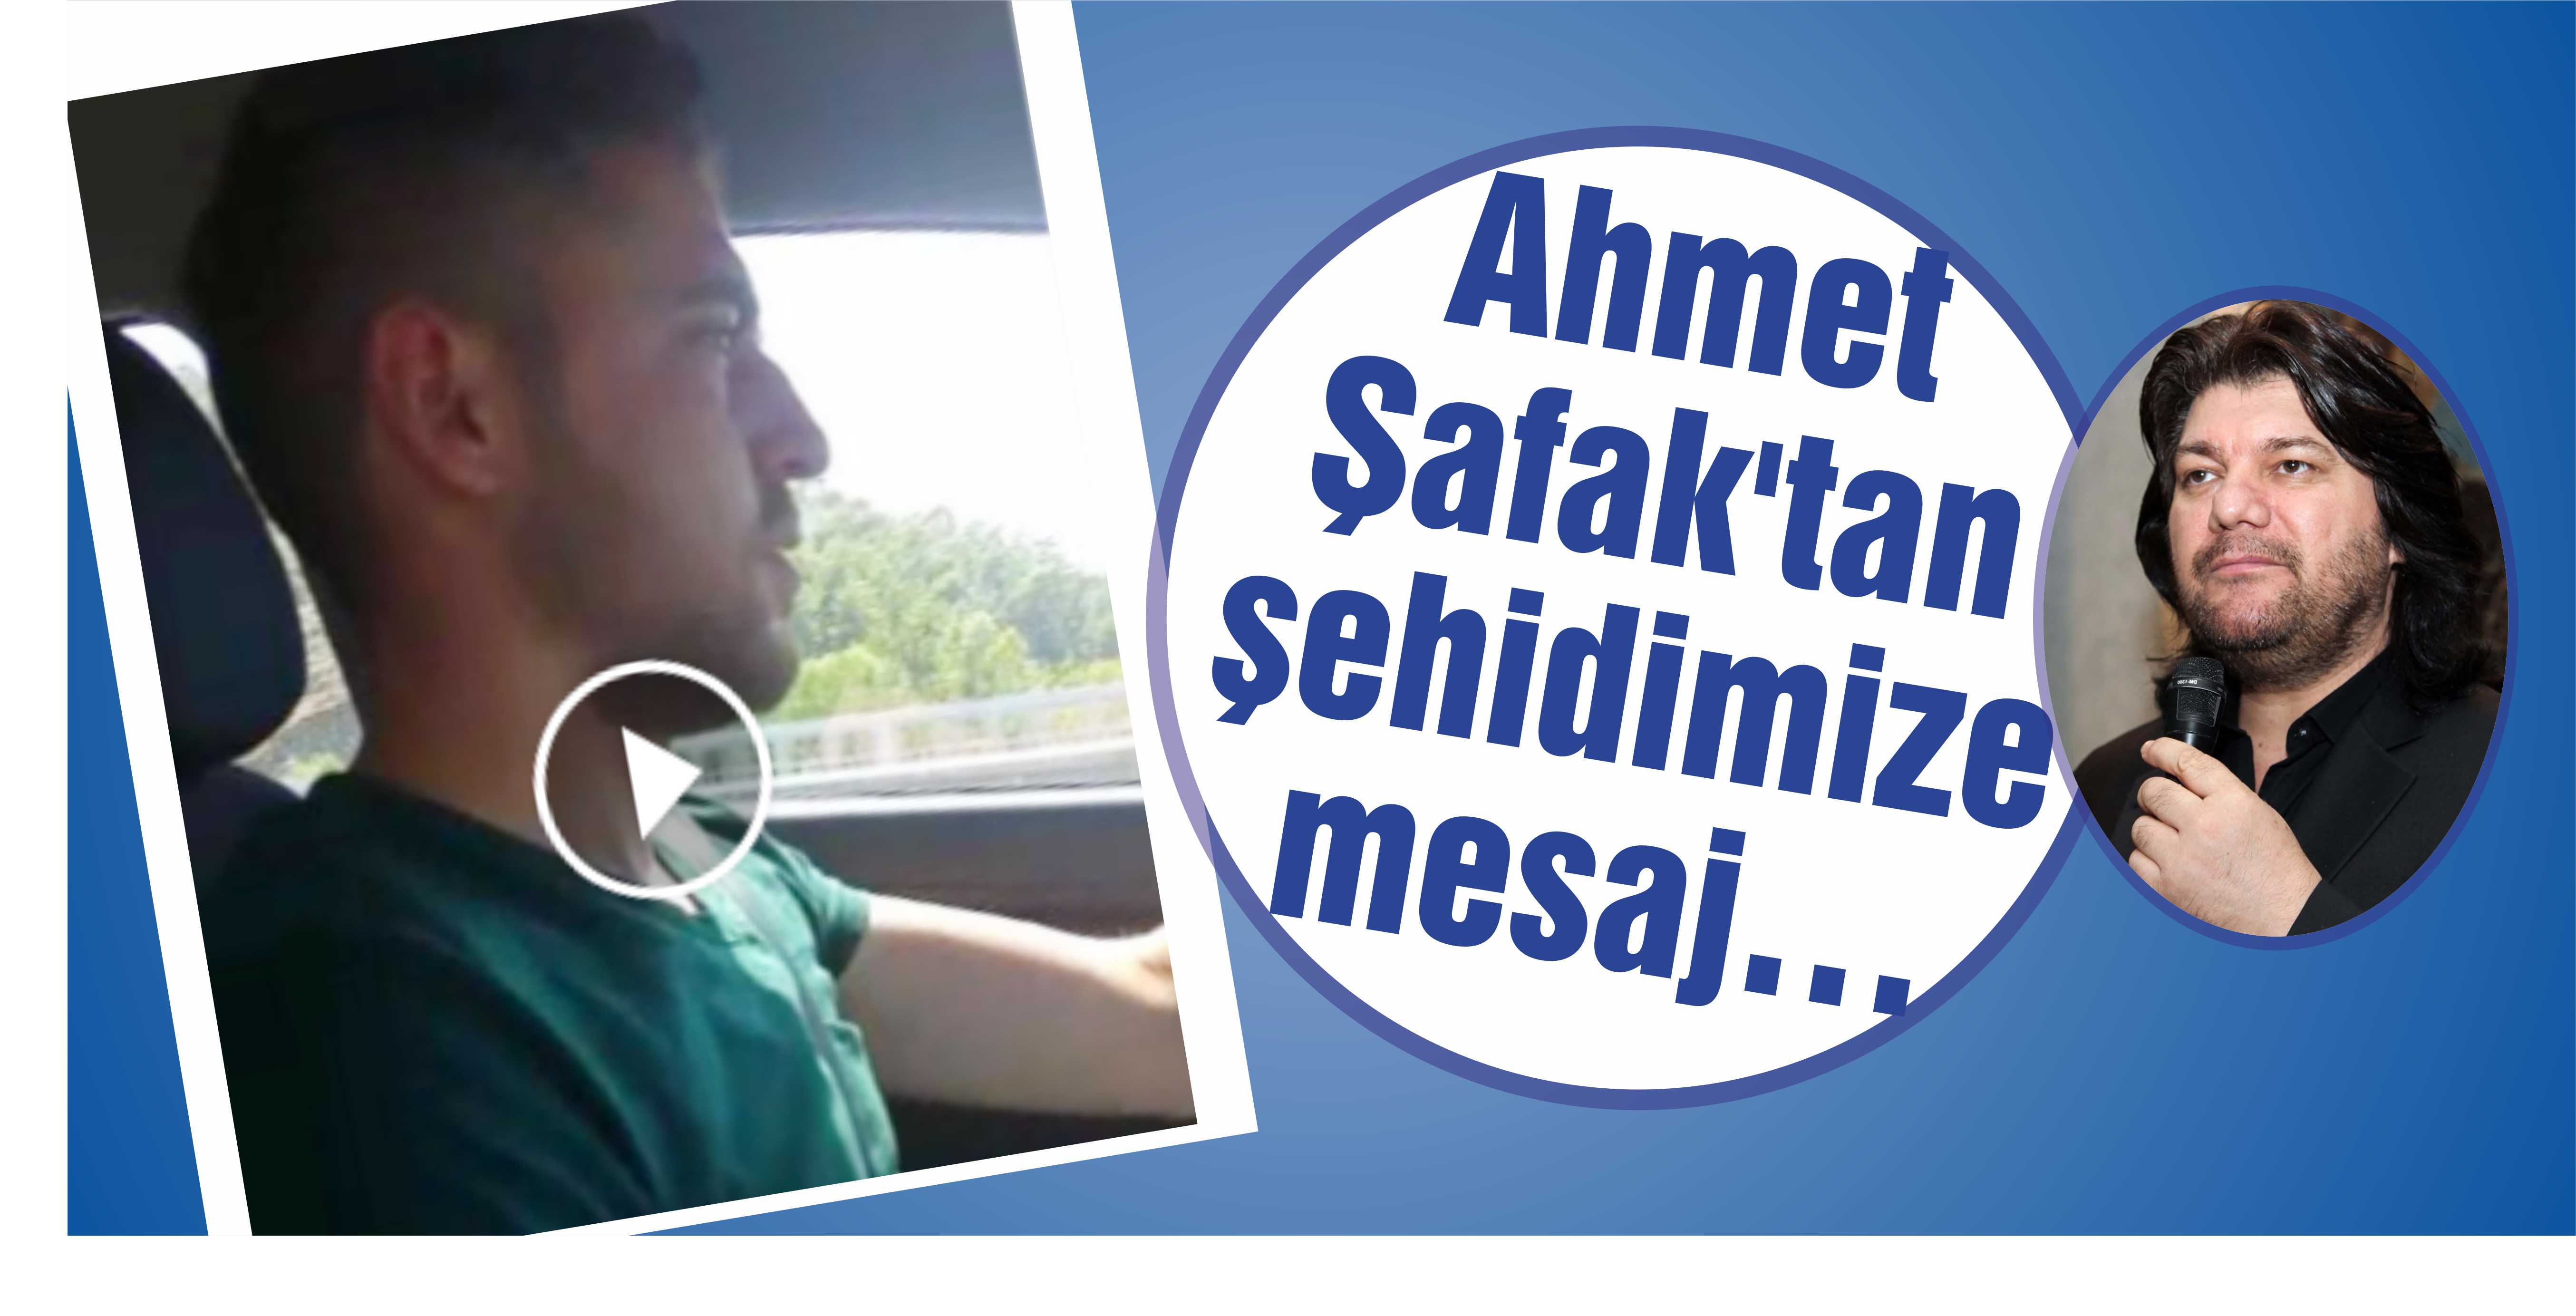 Ahmet Şafak’tan şehidimize mesaj…